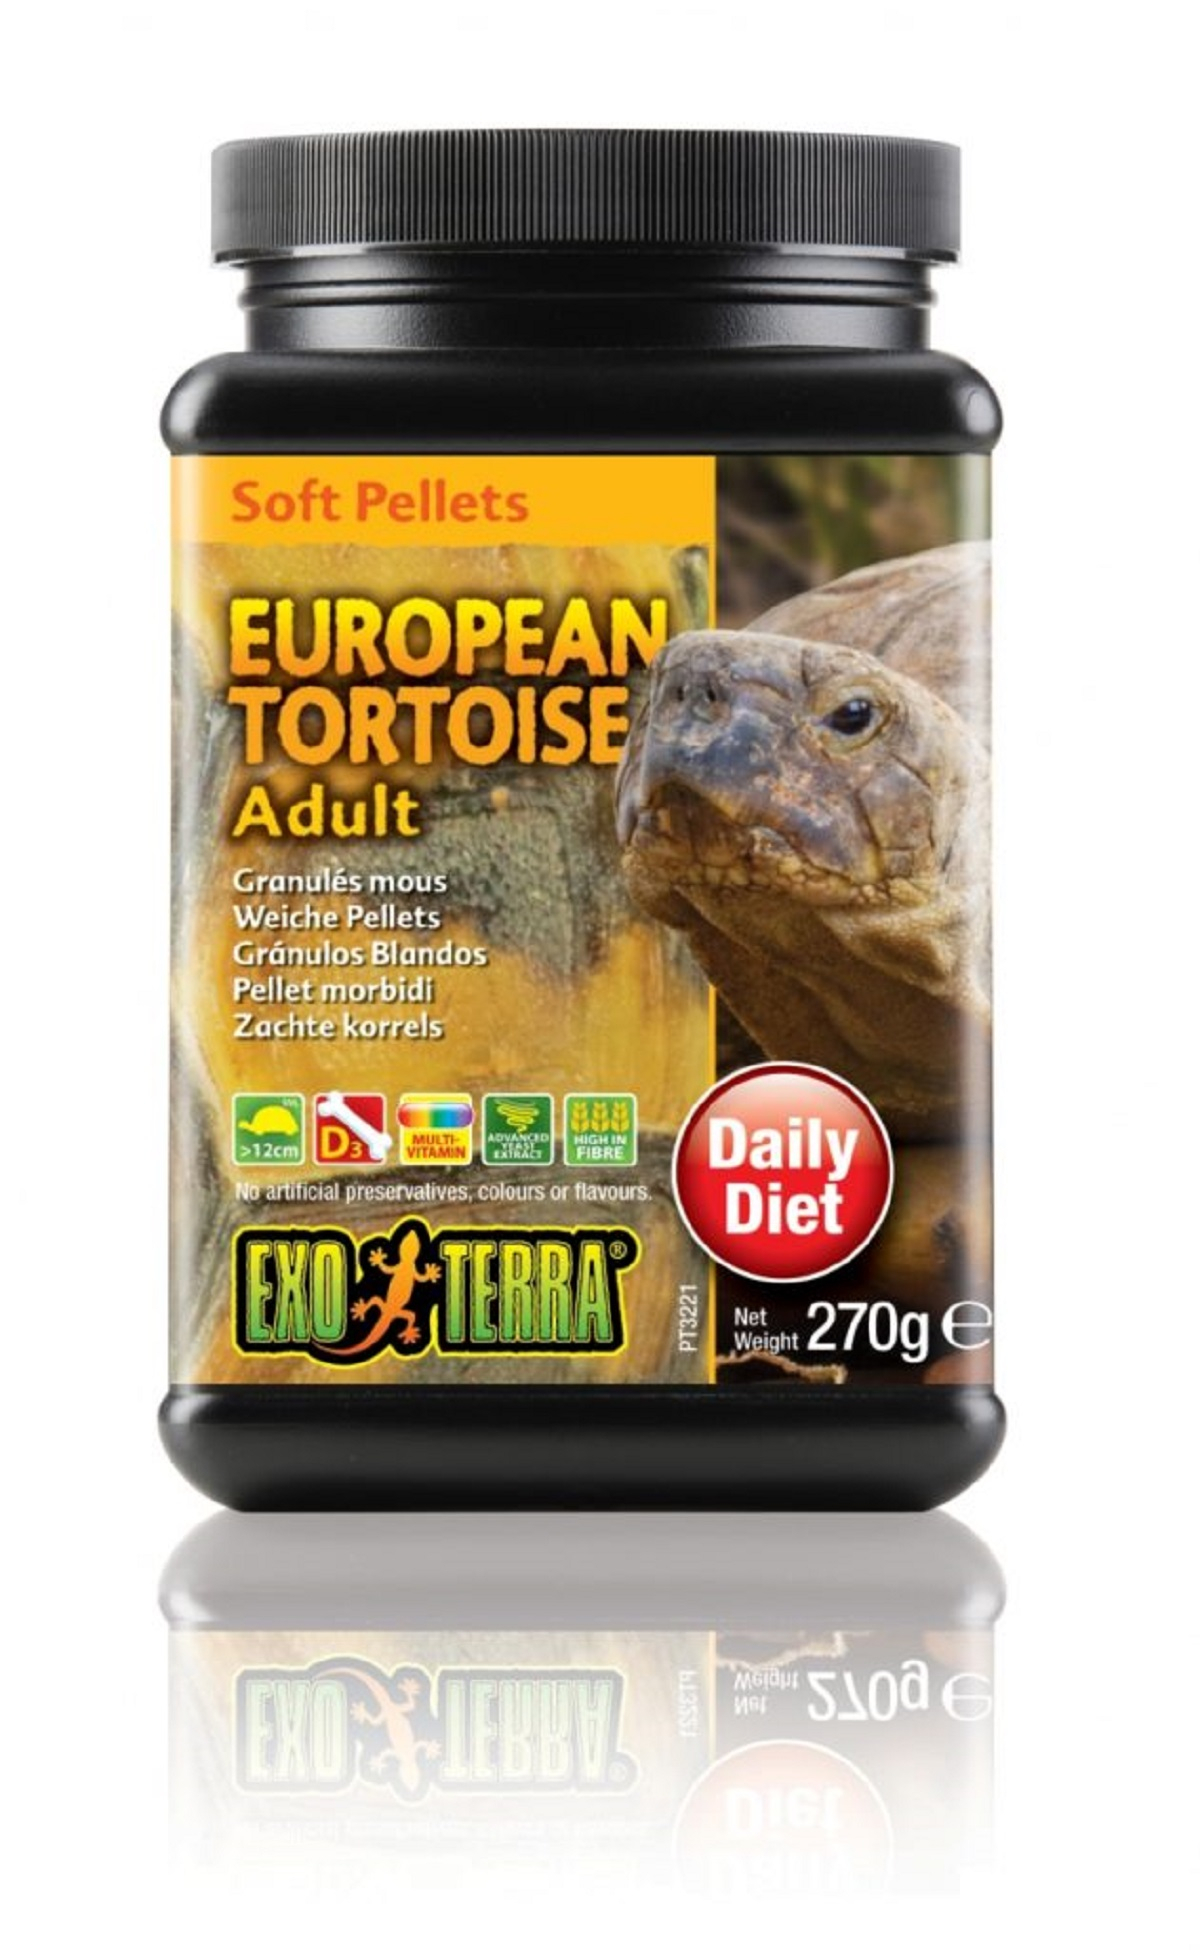 Exo Terra granulés mous pour tortues terrestres européennes adultes 